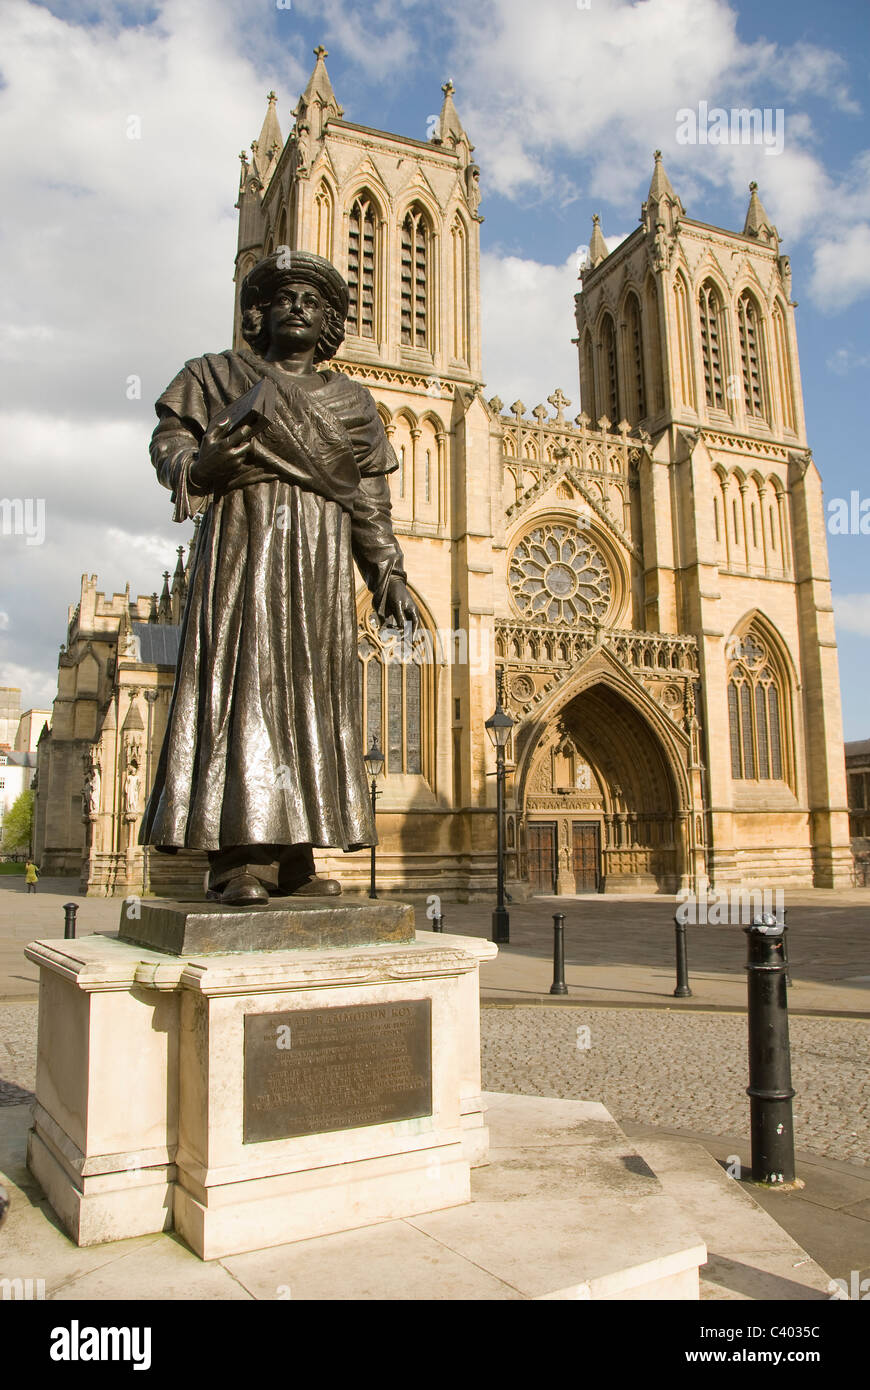 Statue de Raja Rammohun Roy en face de la cathédrale de Bristol, College Green, Bristol, England, UK Banque D'Images